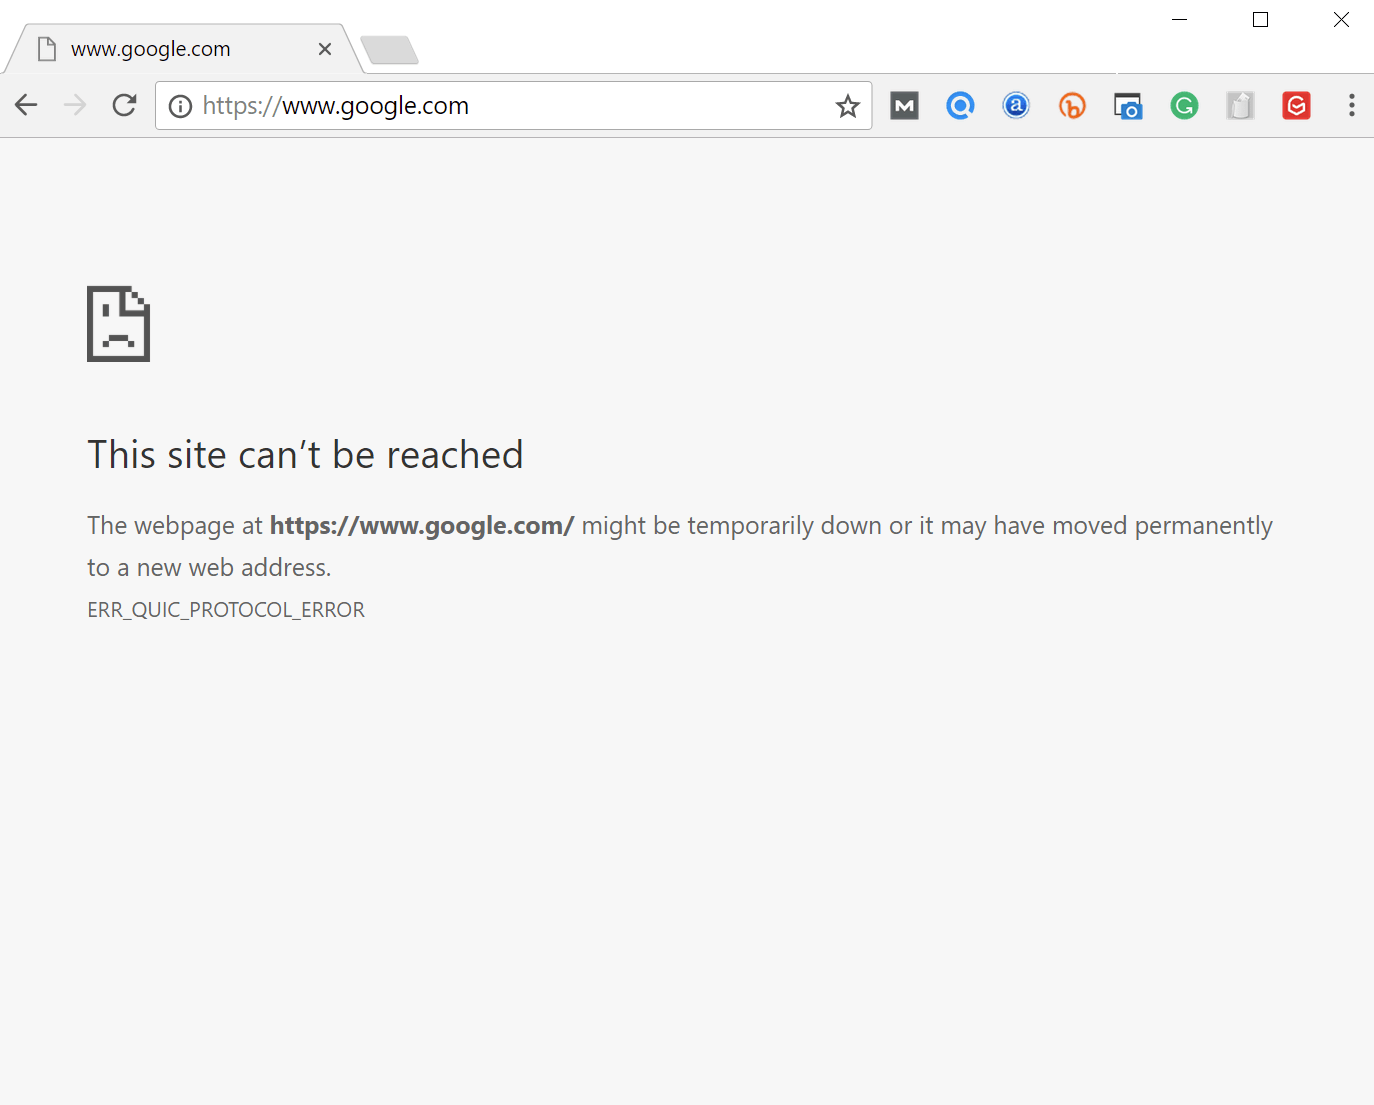 Err_quic_protocol_error ubuntu google